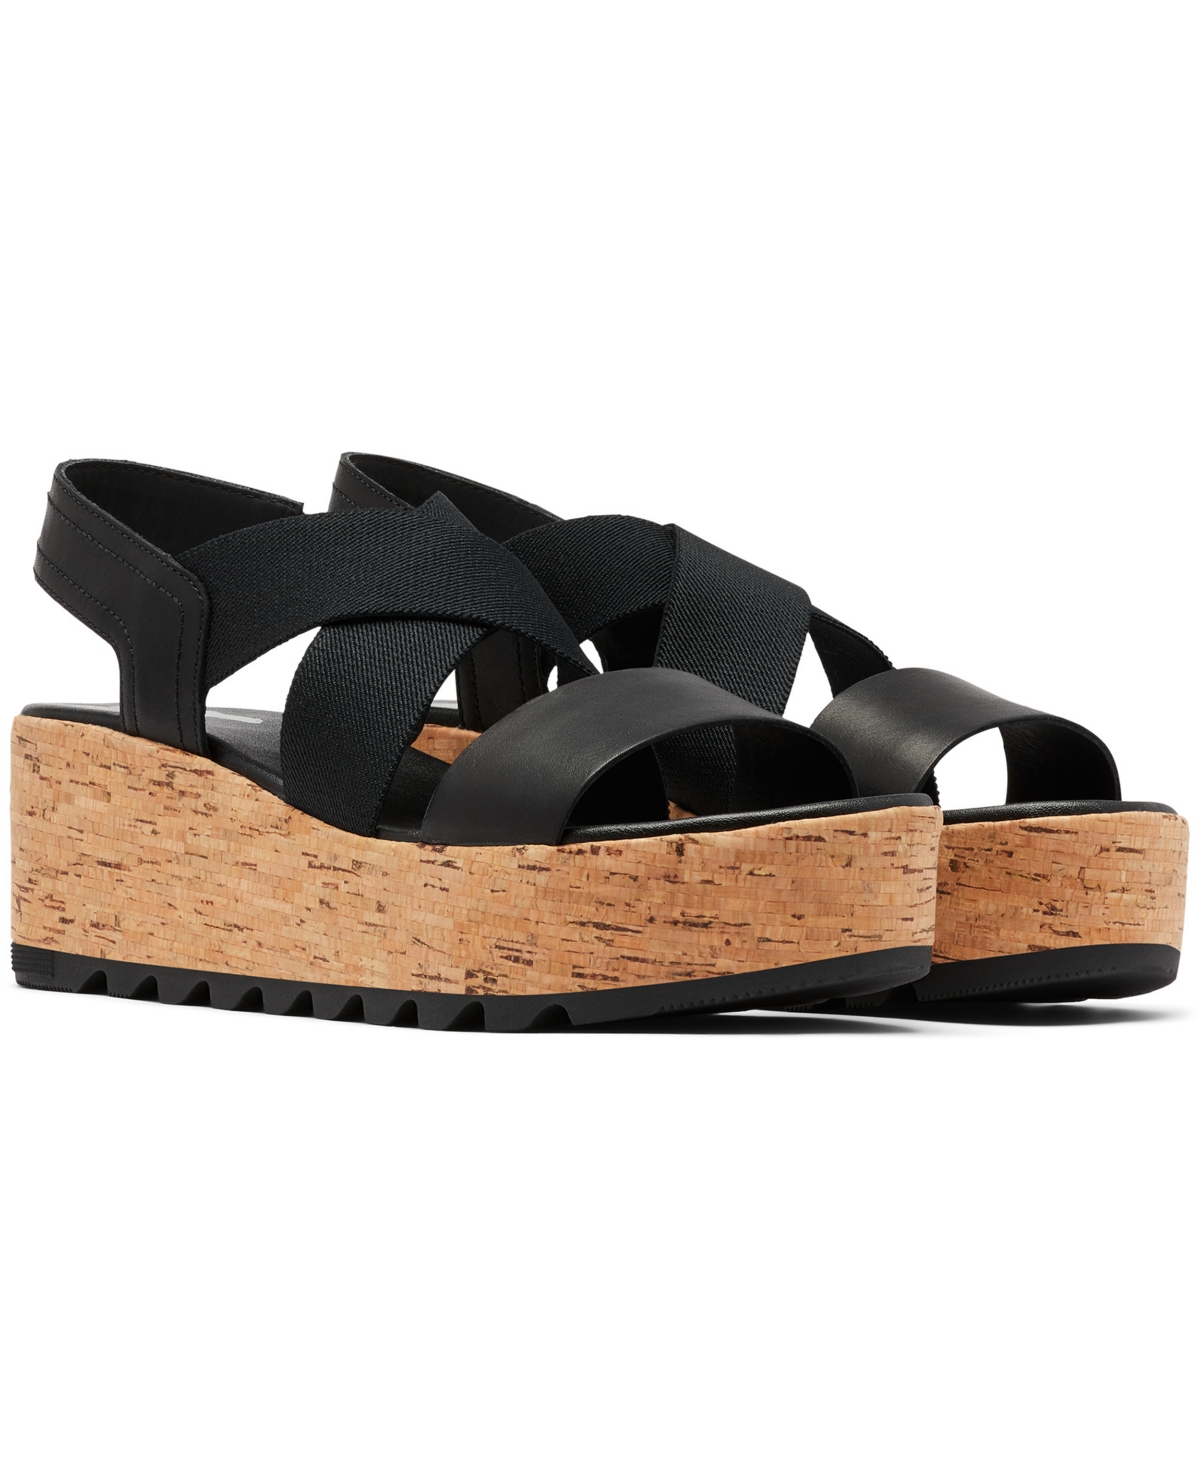 Size 8 SOREL Cameron Flatform Sandal, in Black at Nordstrom